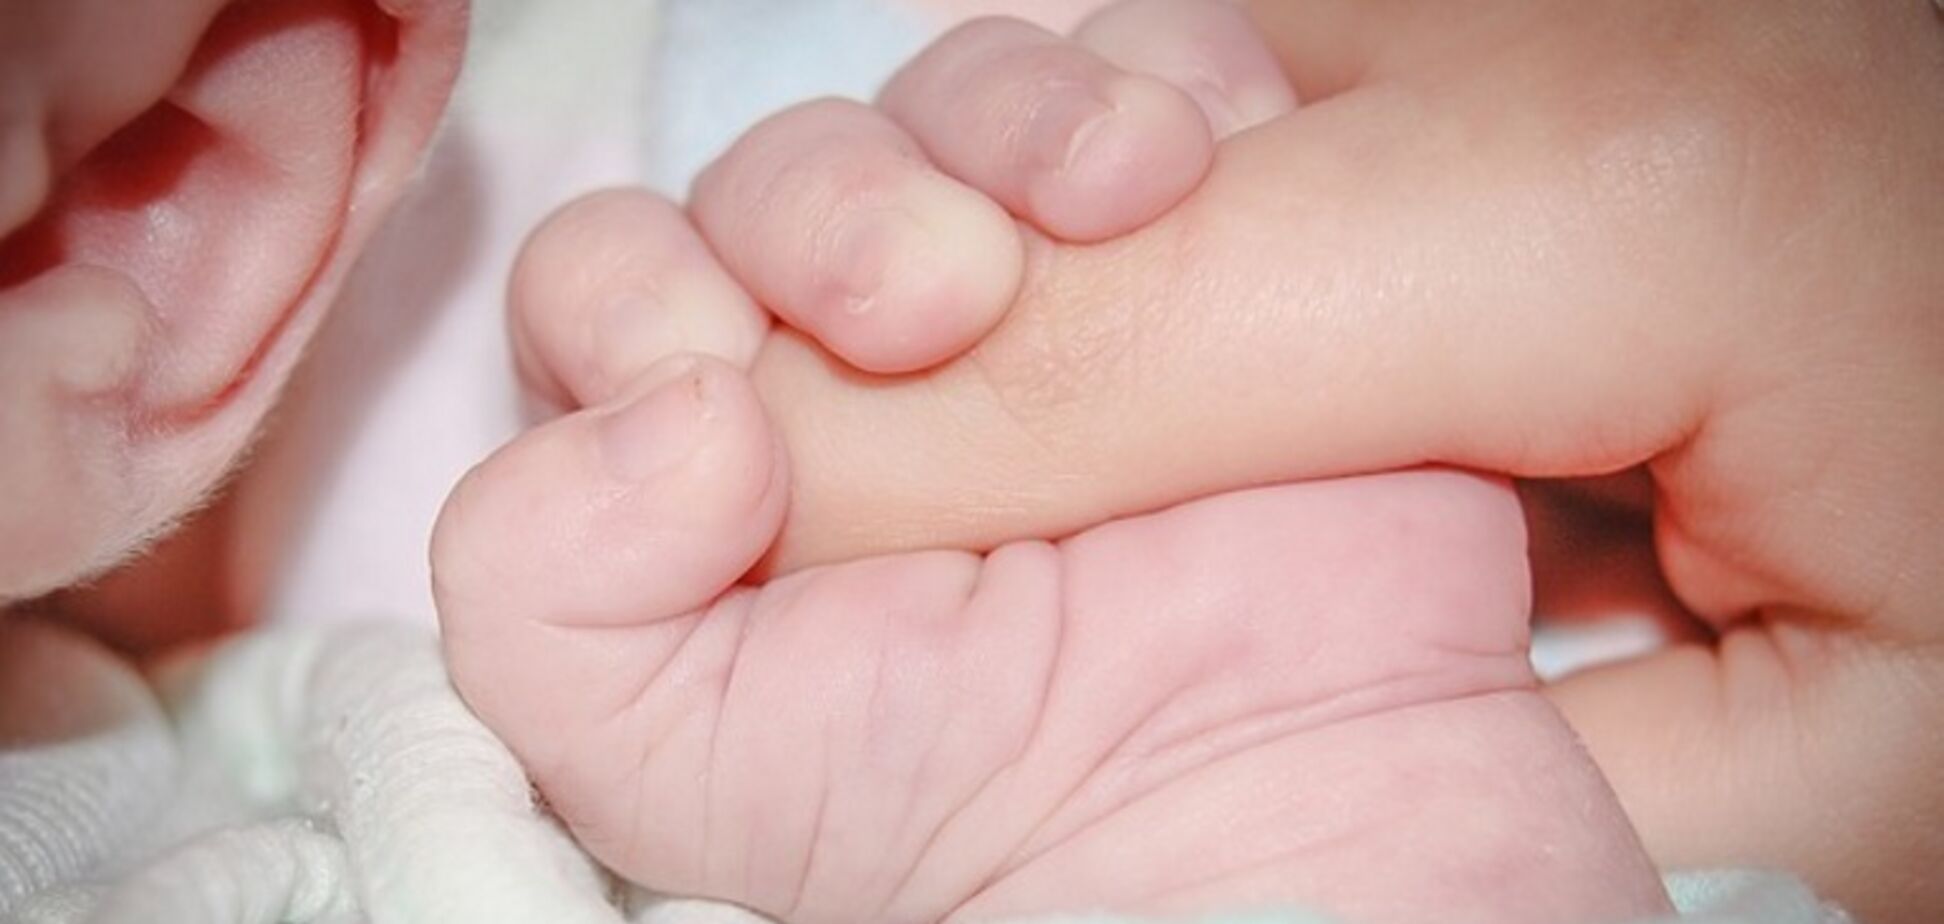    В Греции родился ребенок от трех родителей: как так вышло